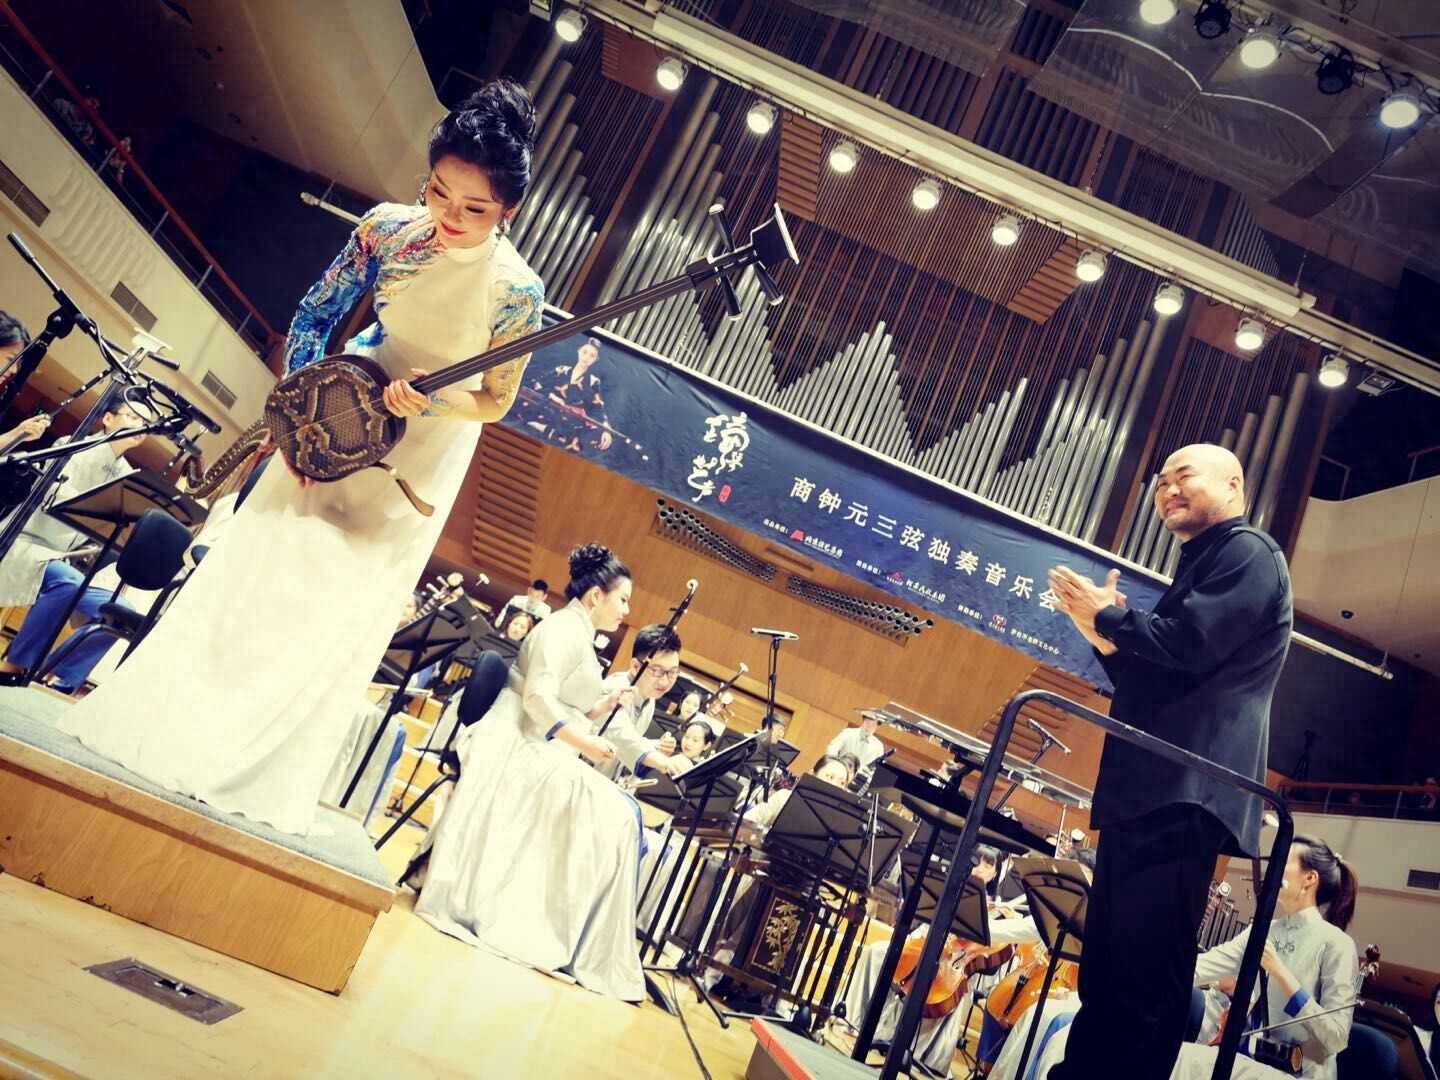 7月13日晚，由北京演艺集团主办，北京民族乐团承办的《钟琴艺声》商钟元三弦独奏音乐会在北京音乐厅隆重上演，这场音乐会给前来观看的人们带来不同感觉的视听盛宴。本场音乐会